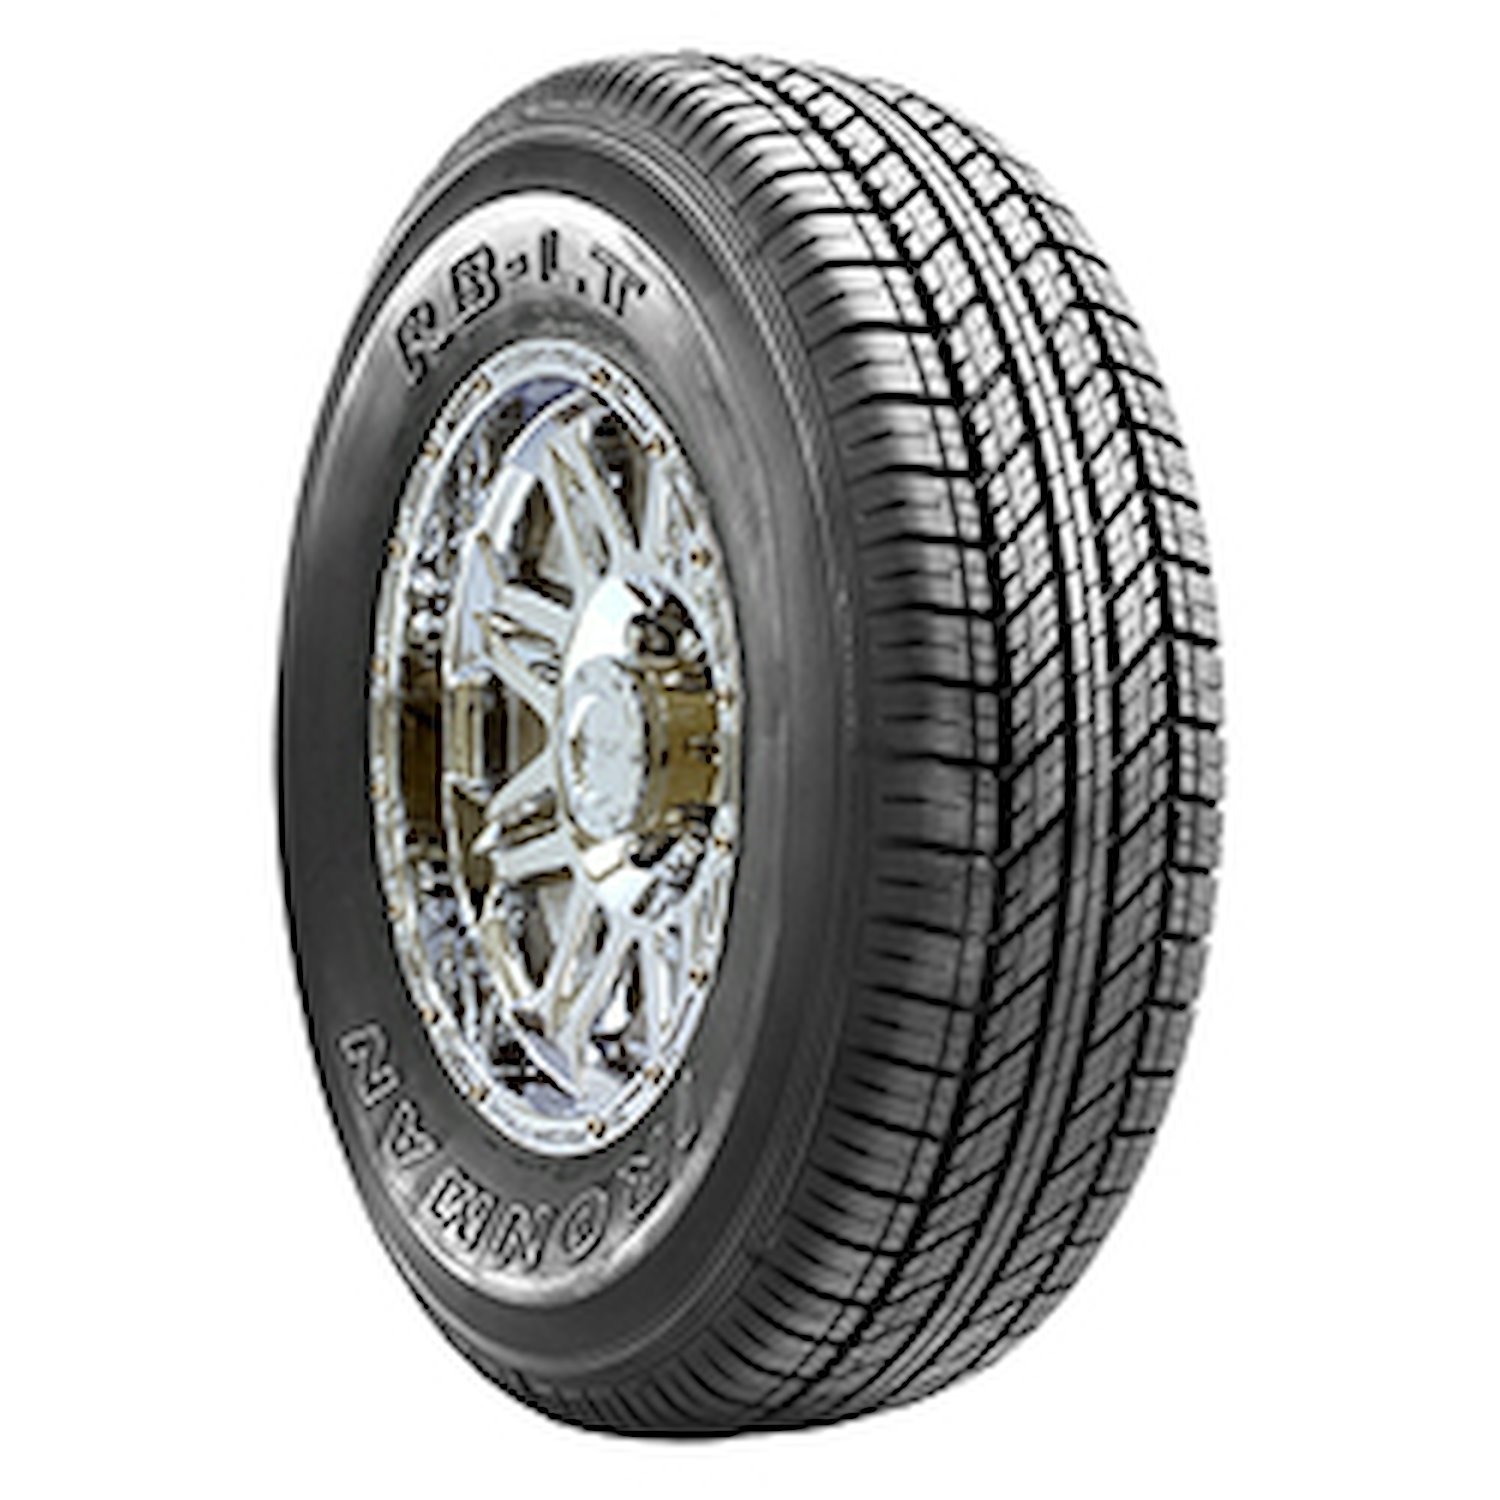 91194 RB LT Tire, LT265/75R16, 123/120S